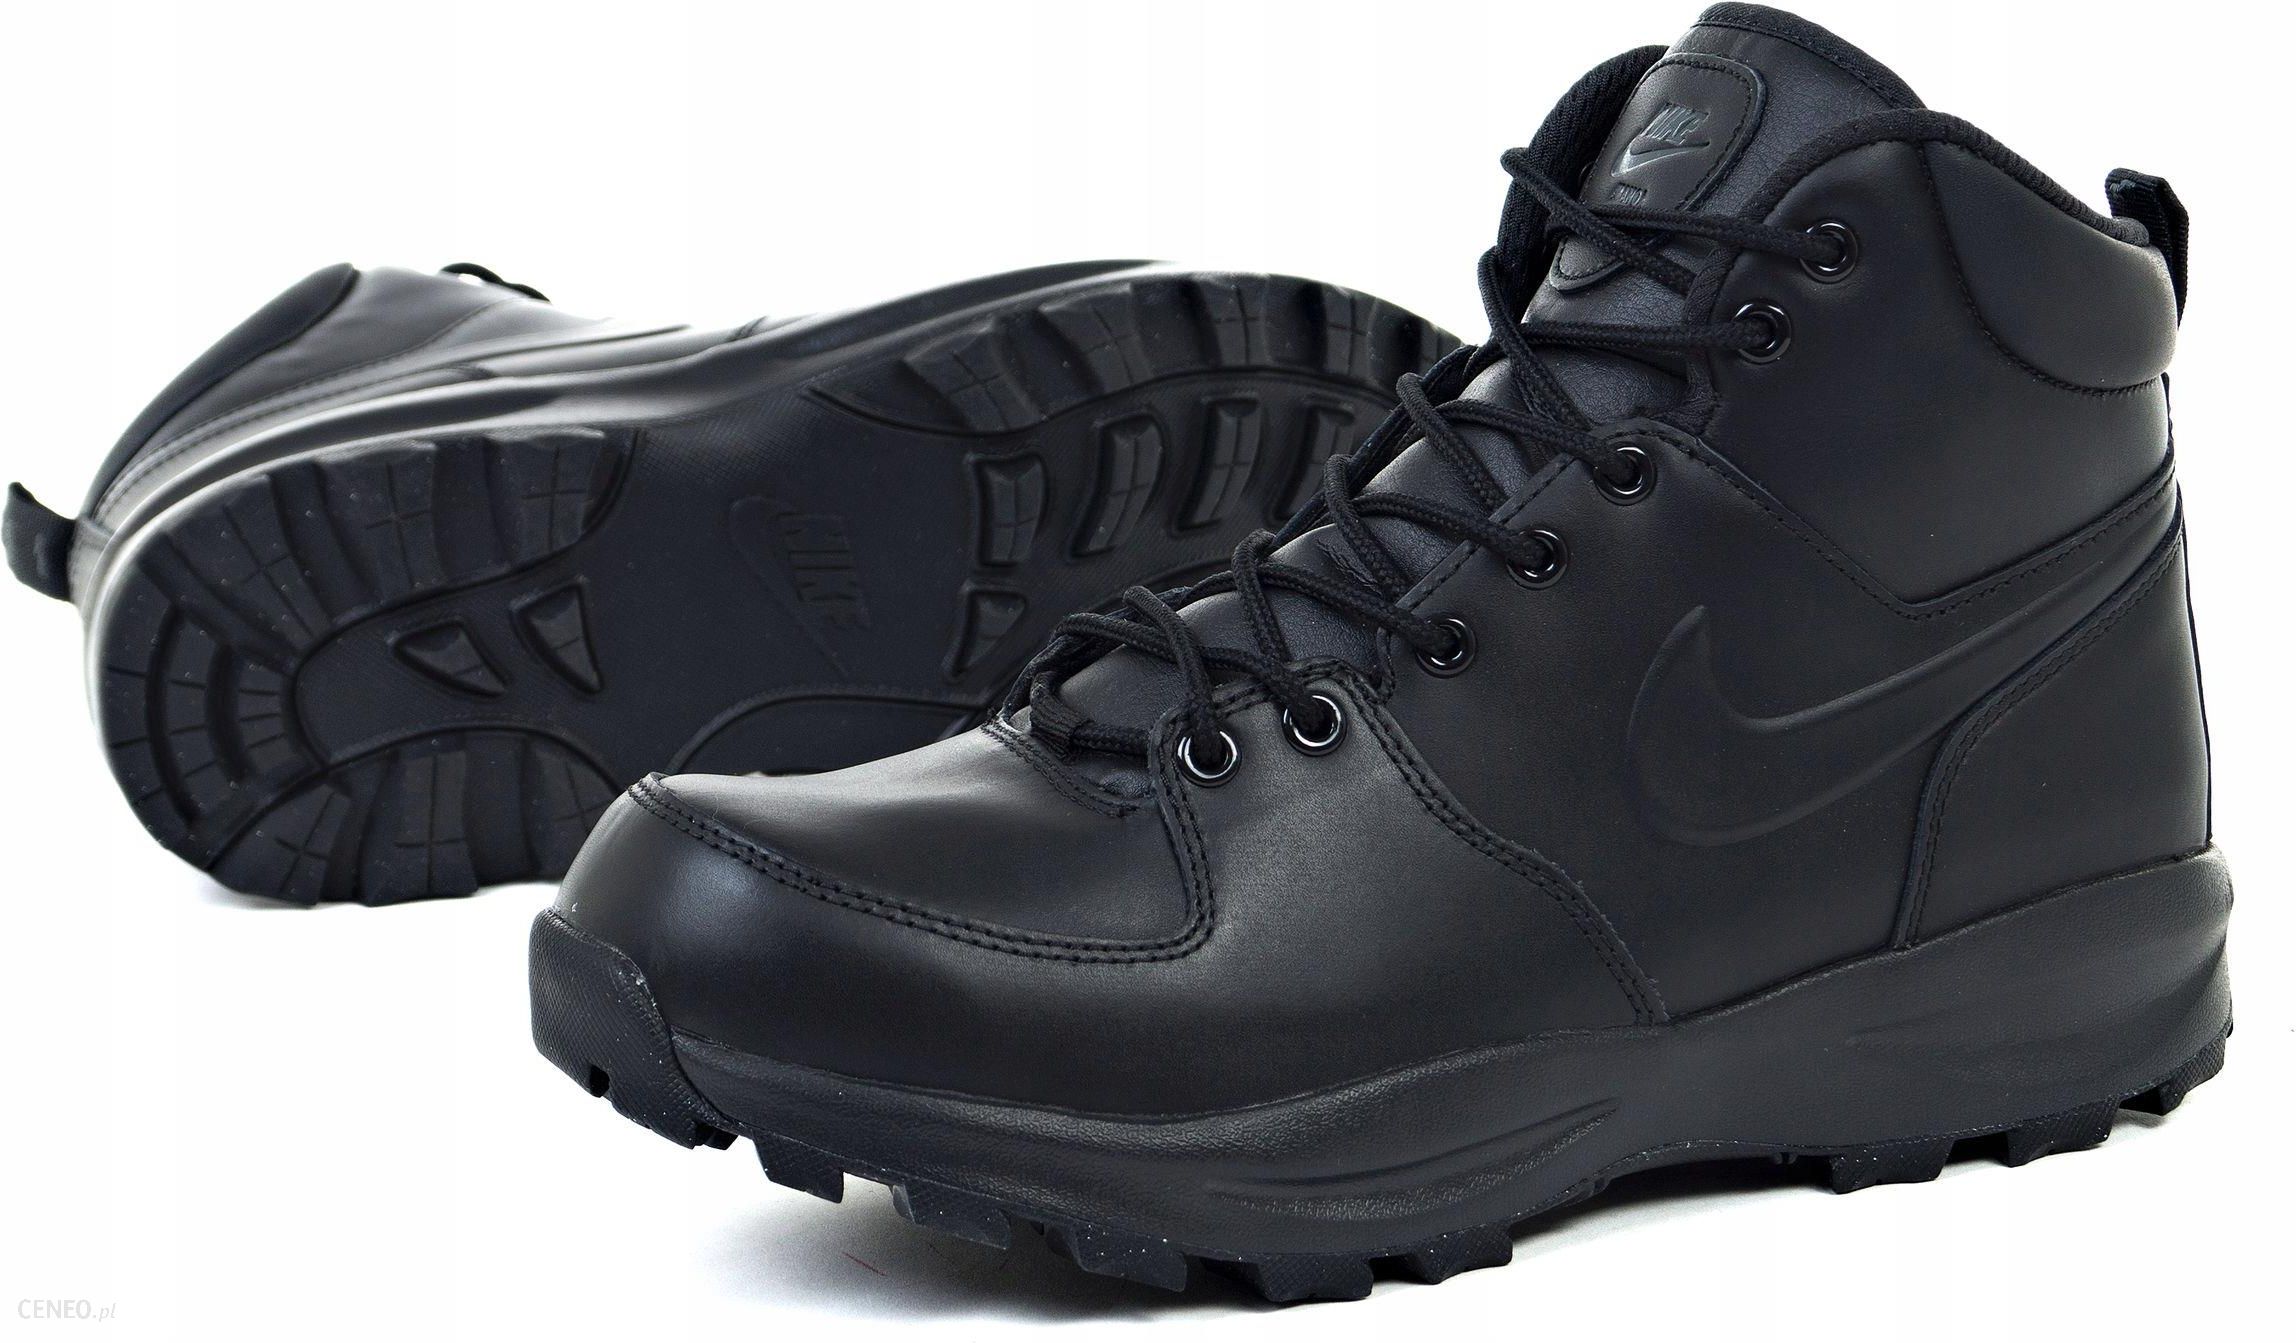 Buty Nike Leather 454350-003 Czarne R. - Ceny i opinie - Ceneo.pl